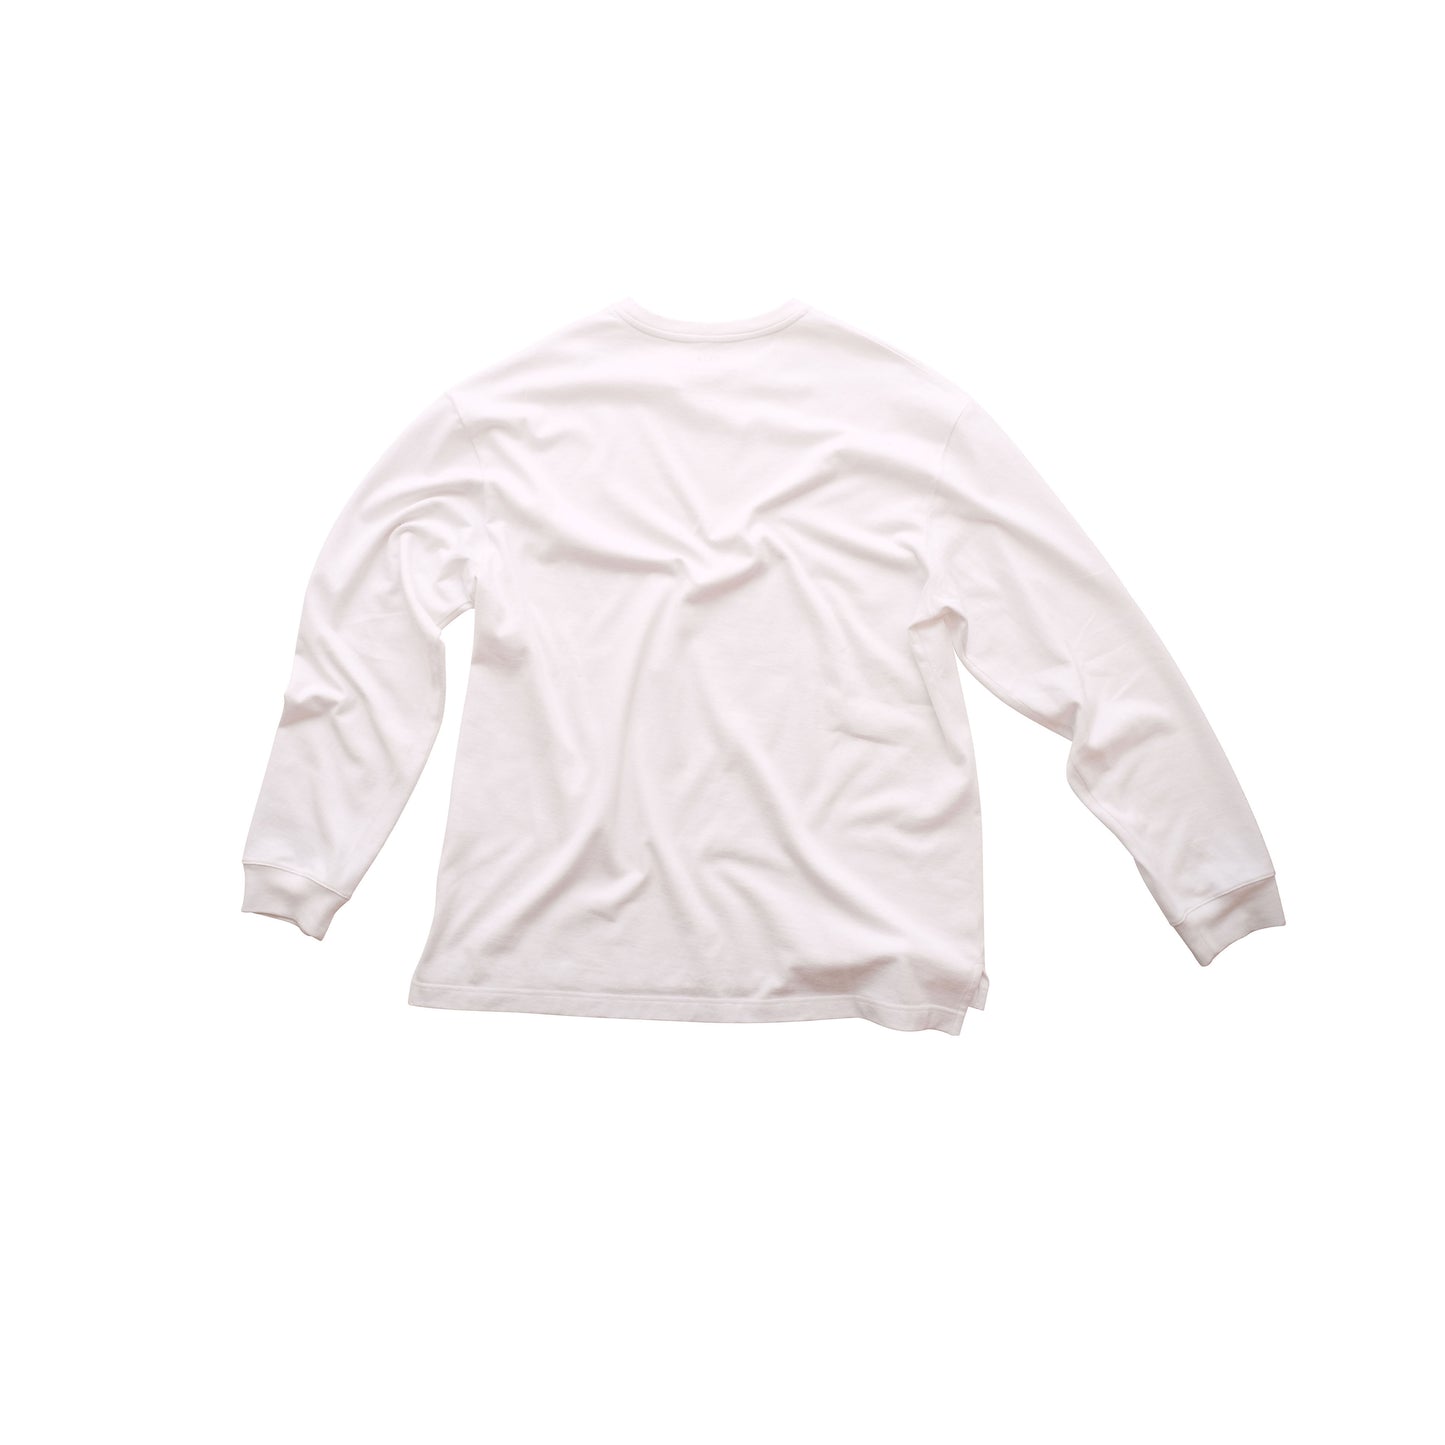 Robert Long Sleeve Cotton T Shirt White